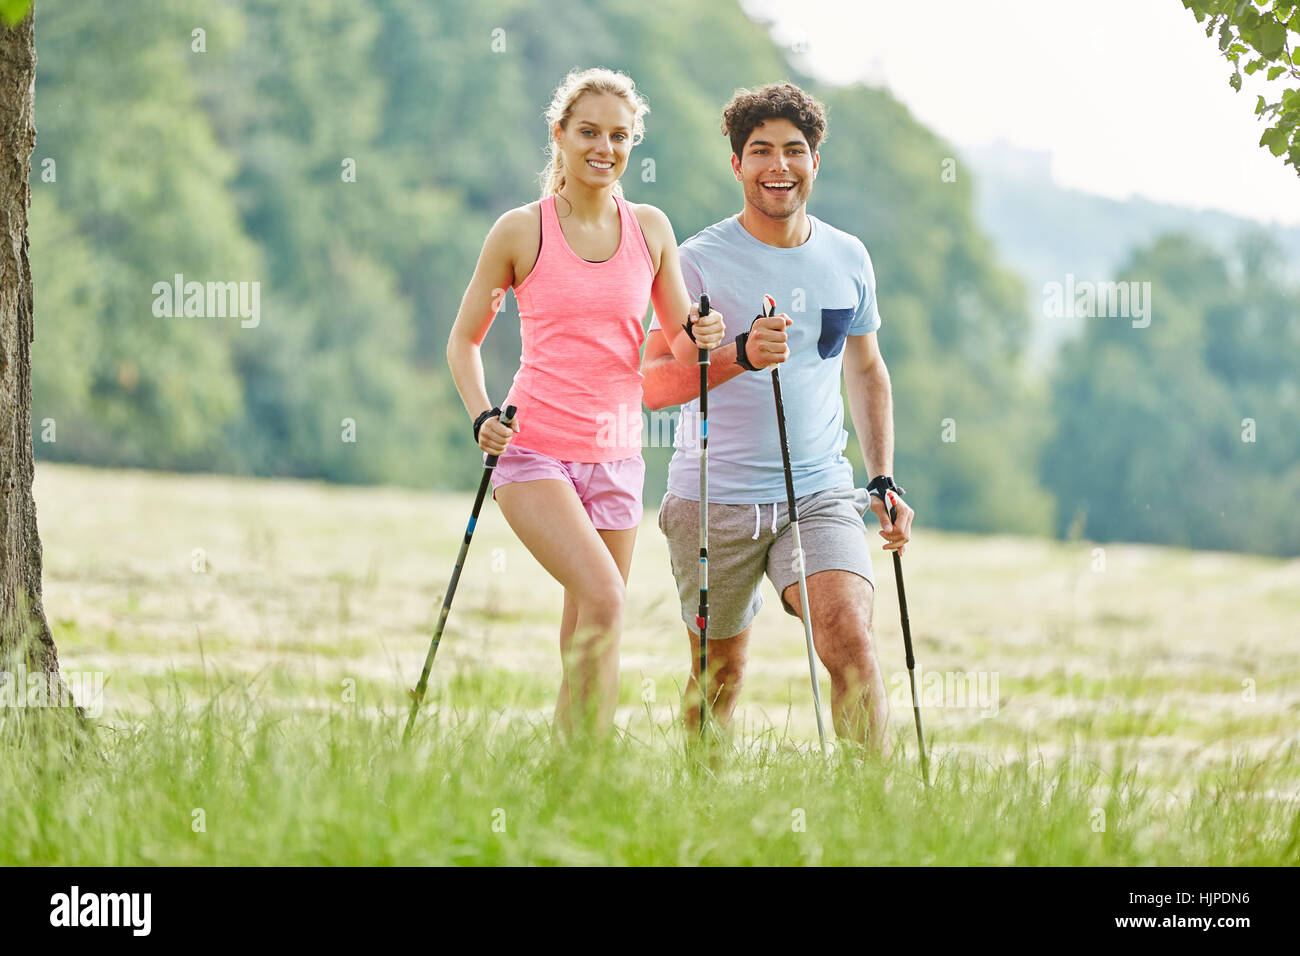 Attivo coppia giovane escursionismo con gioia e divertimento durante un allenamento fitness Foto Stock